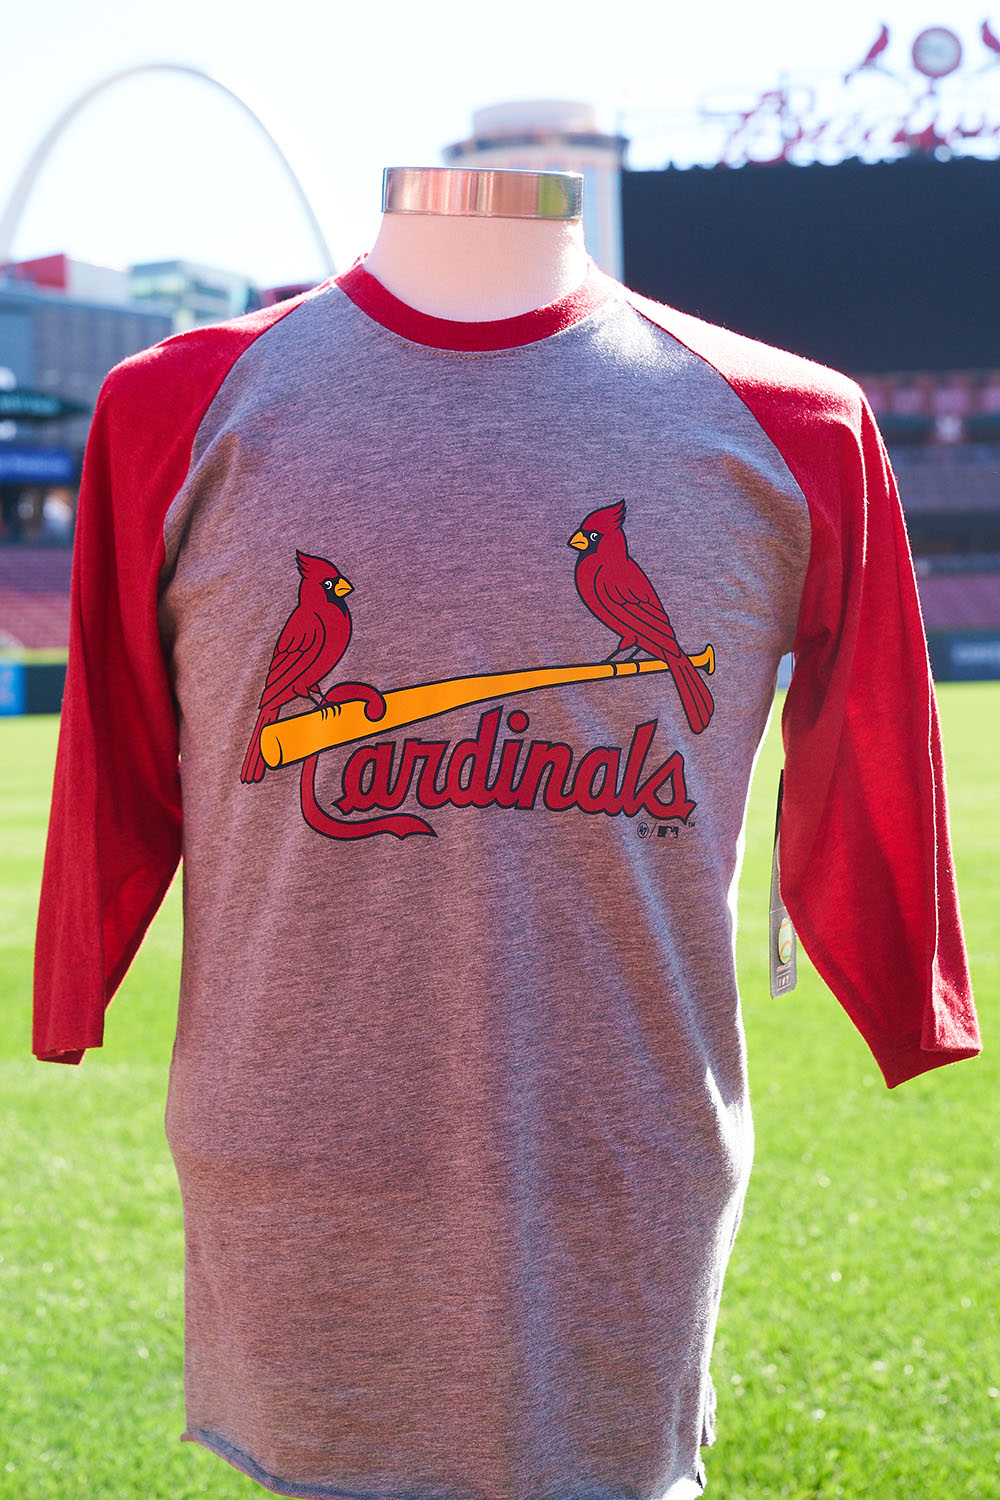 cardinals baseball shop